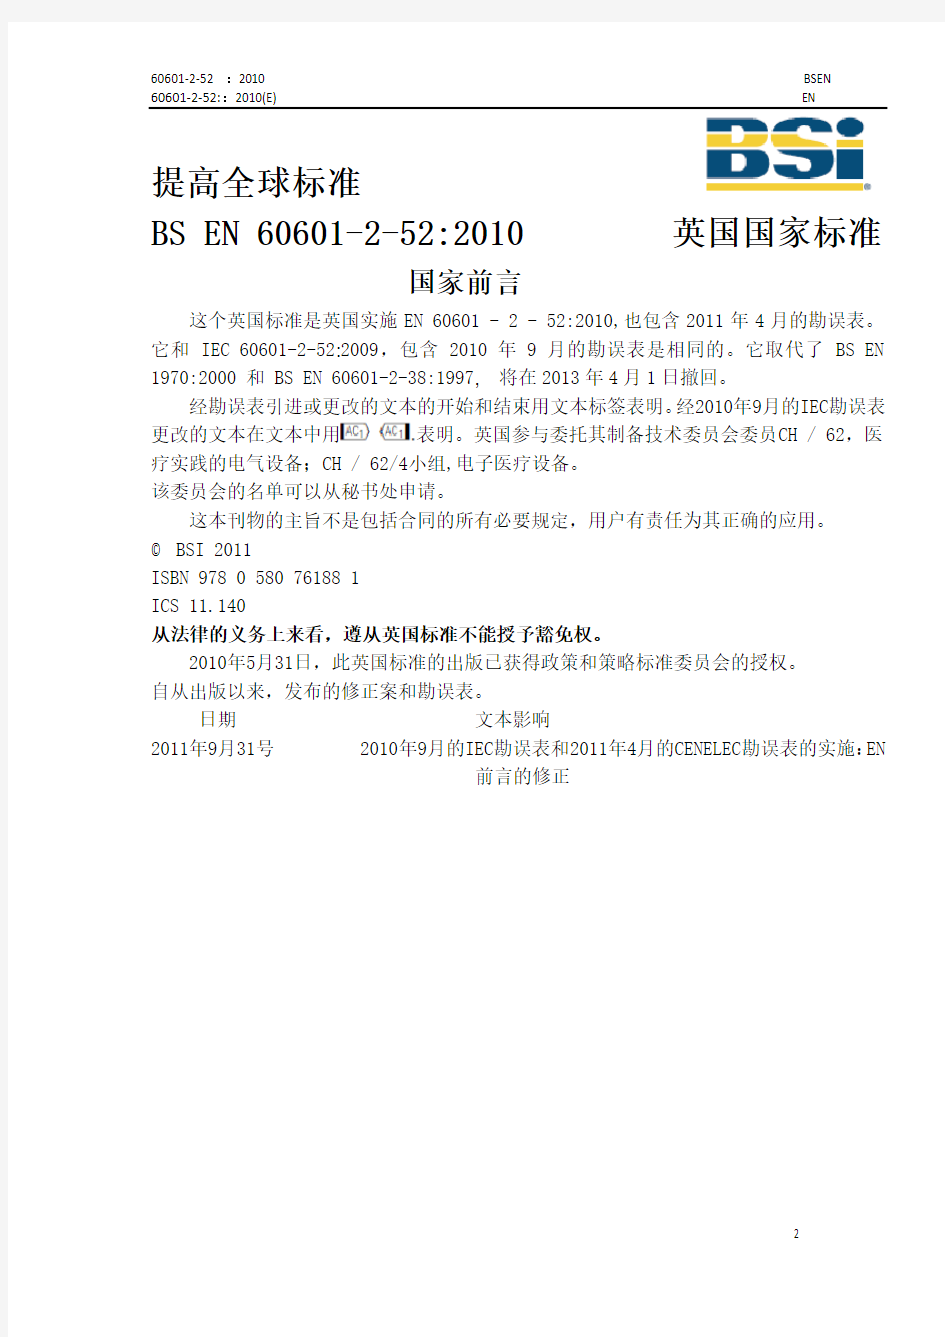 BS EN 60601-2-52(中文 仅供参考)